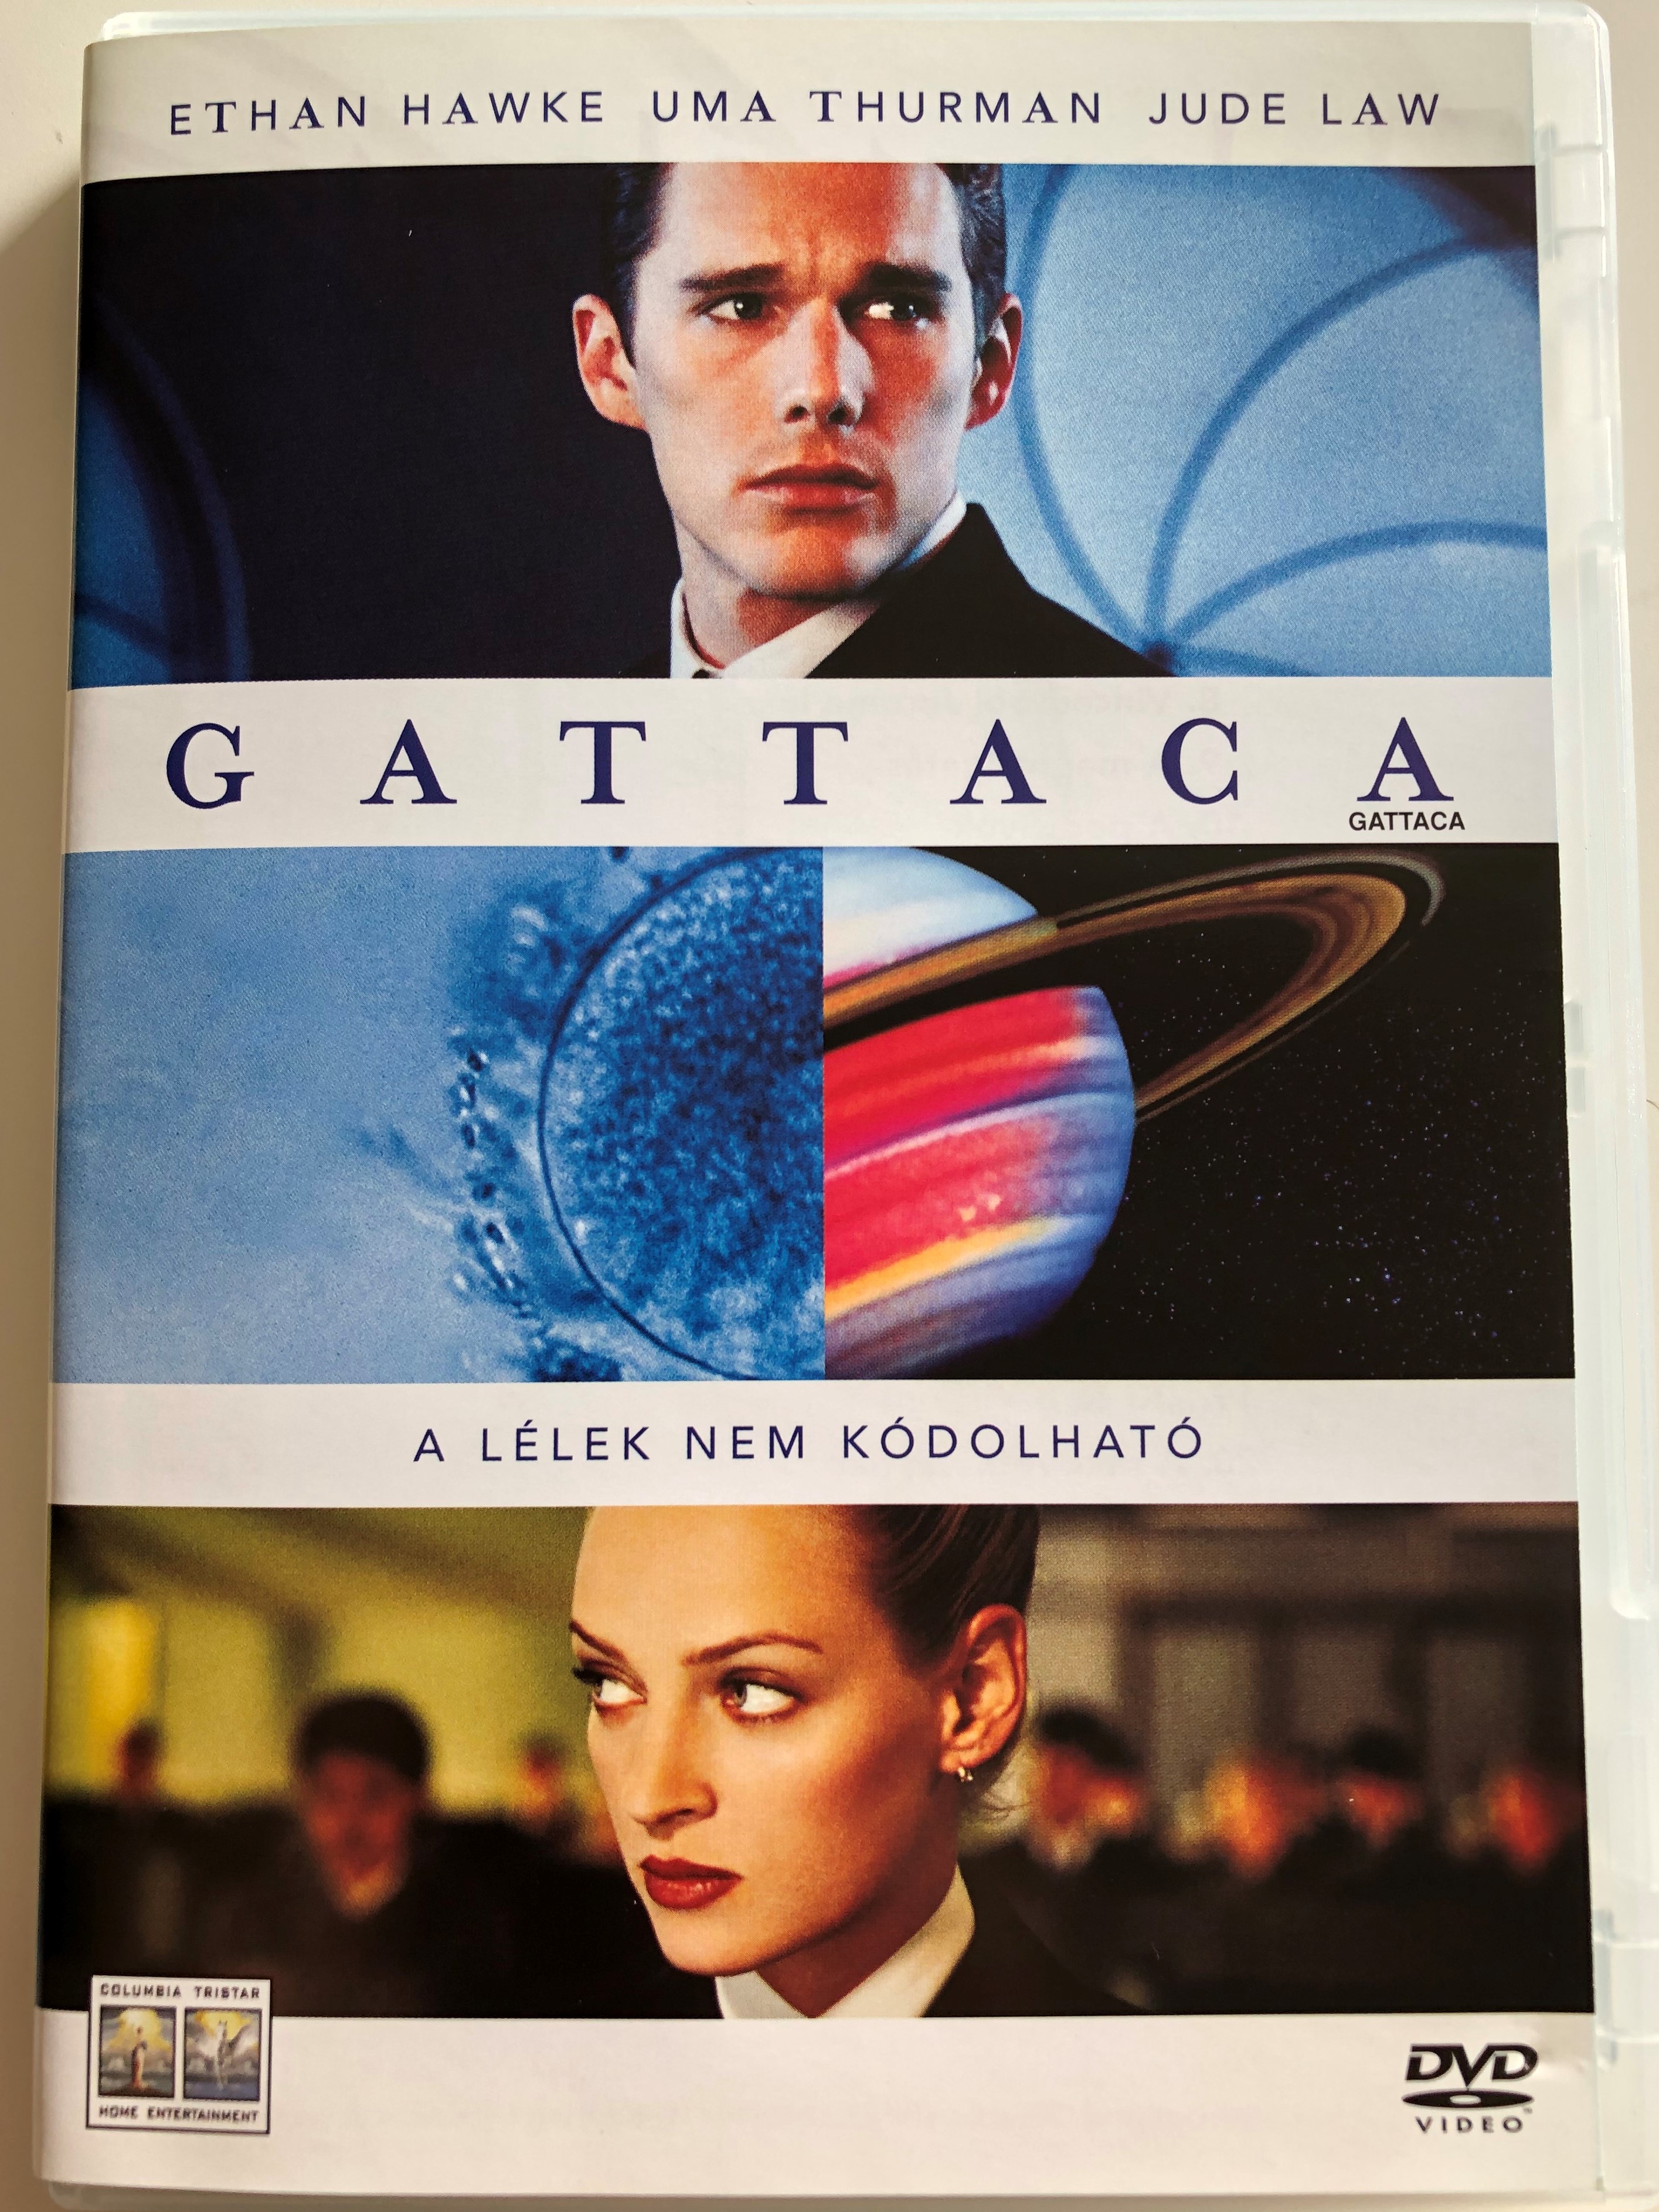 gattaca-dvd-1997-directed-by-andrew-niccol-starring-ethan-hawke-uma-thurman-alan-arkin-jude-law-1-.jpg